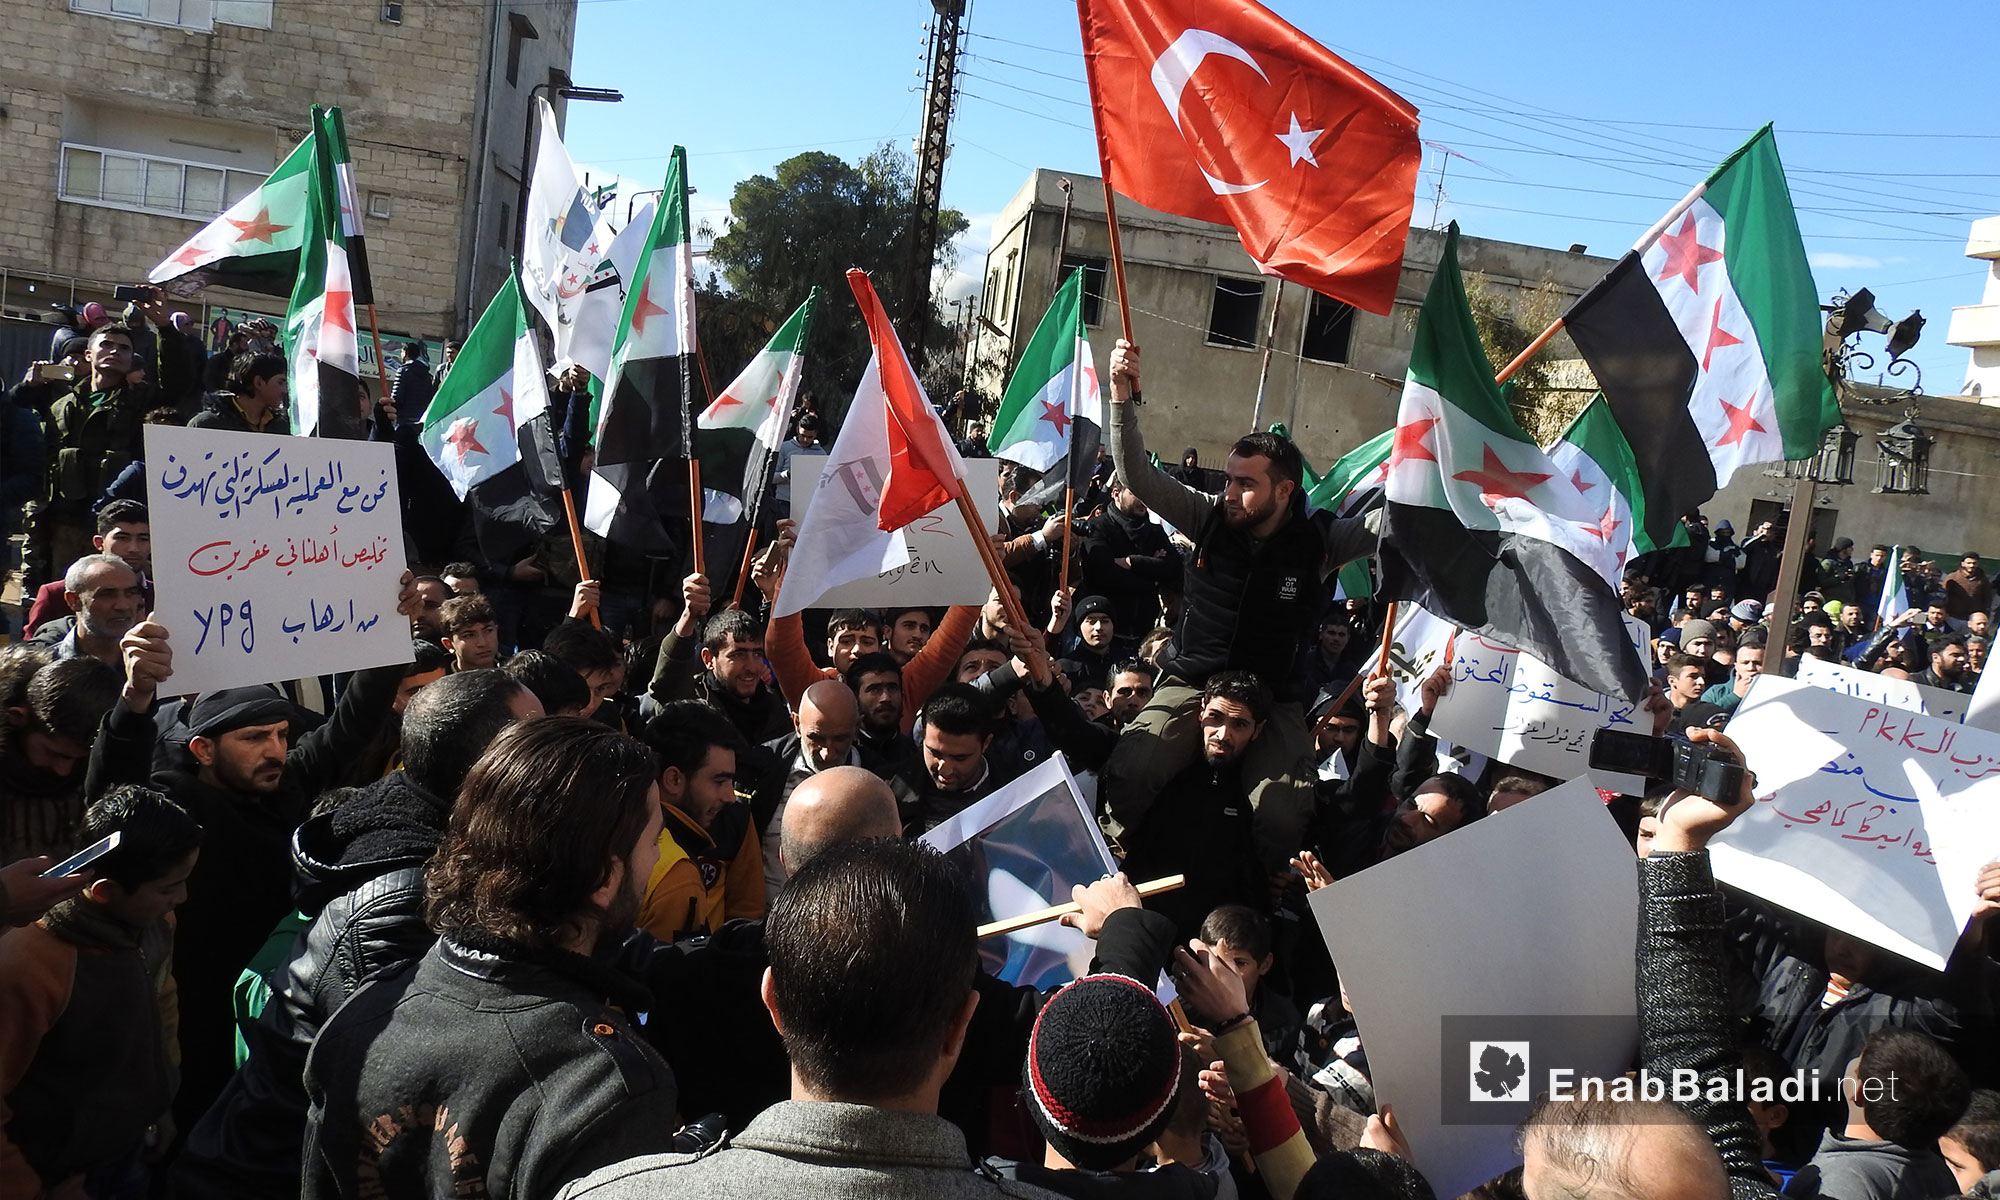 مظاهرة في مدينة اعزاز بريف حلب تأييدا للعمل العسكري من قبل الجيش الحر باتجاه منطقة عفرين بدعم تركي - 19 كانون الثاني 2018 (عنب بلدي)